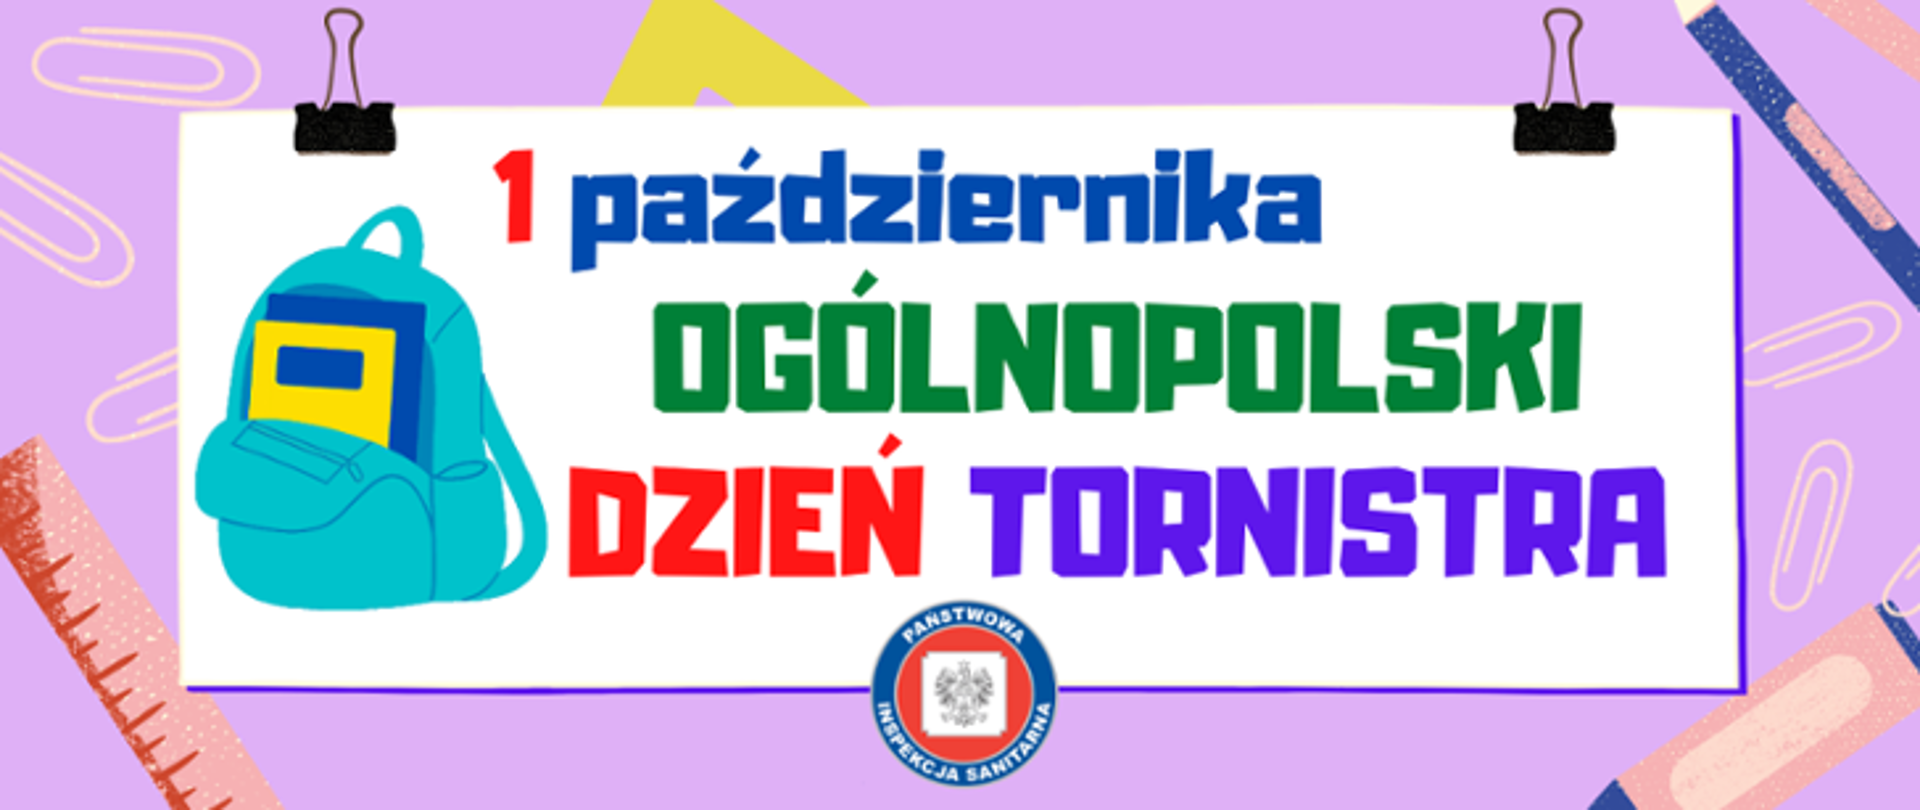 Grafika przedstawia hasło 1 października Ogólnopolski Dzień Tornistra oraz ilustracje tornistra i przyborów szkolnych